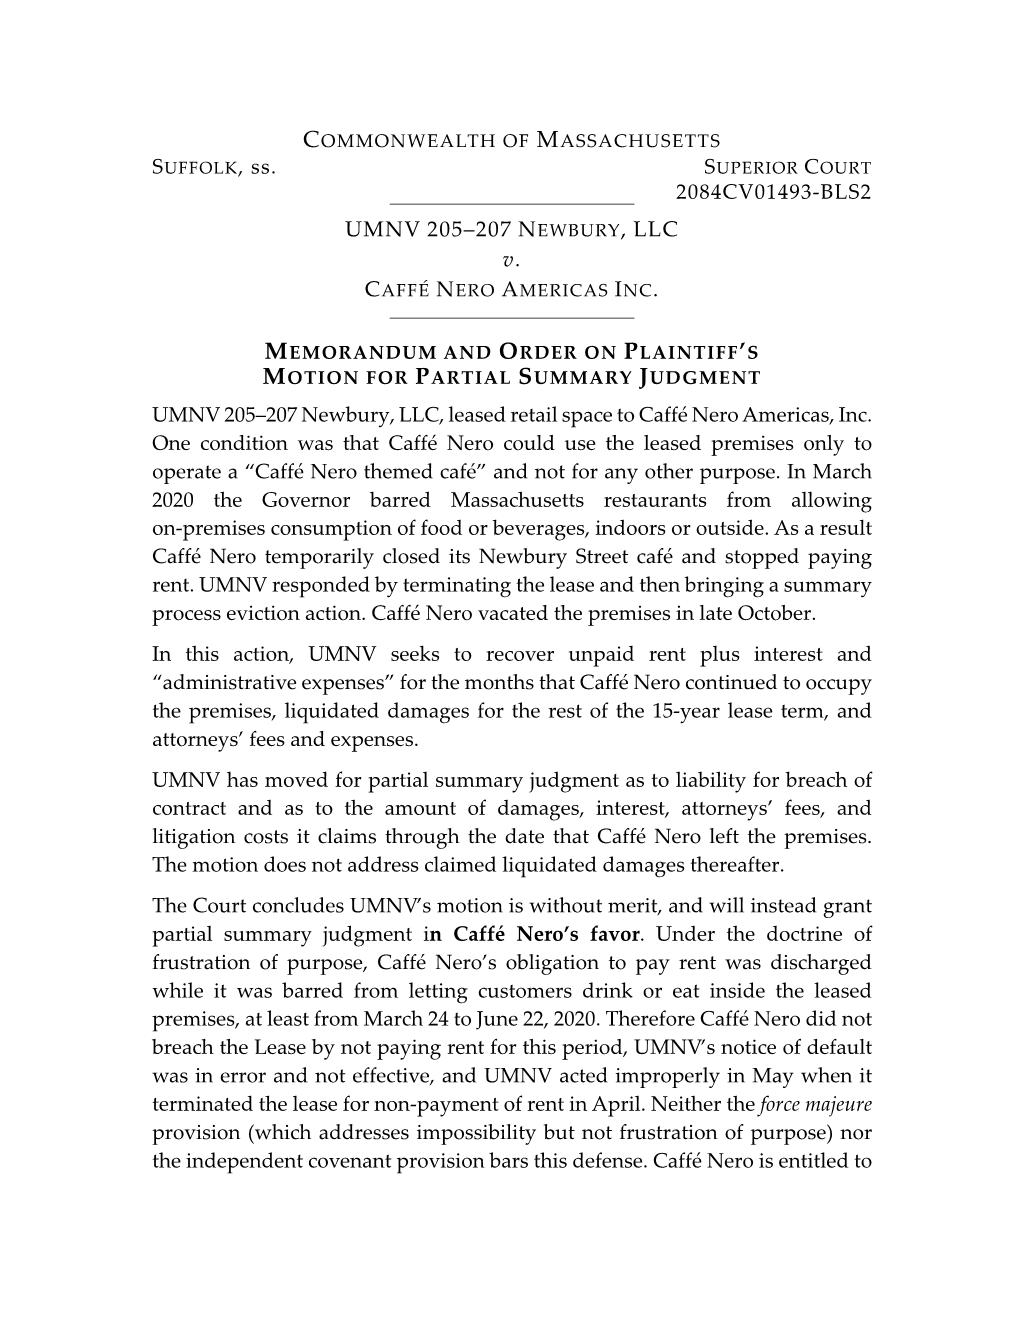 UMNV 205-207 Newbury LLC V Caffe Nero Americas, Inc